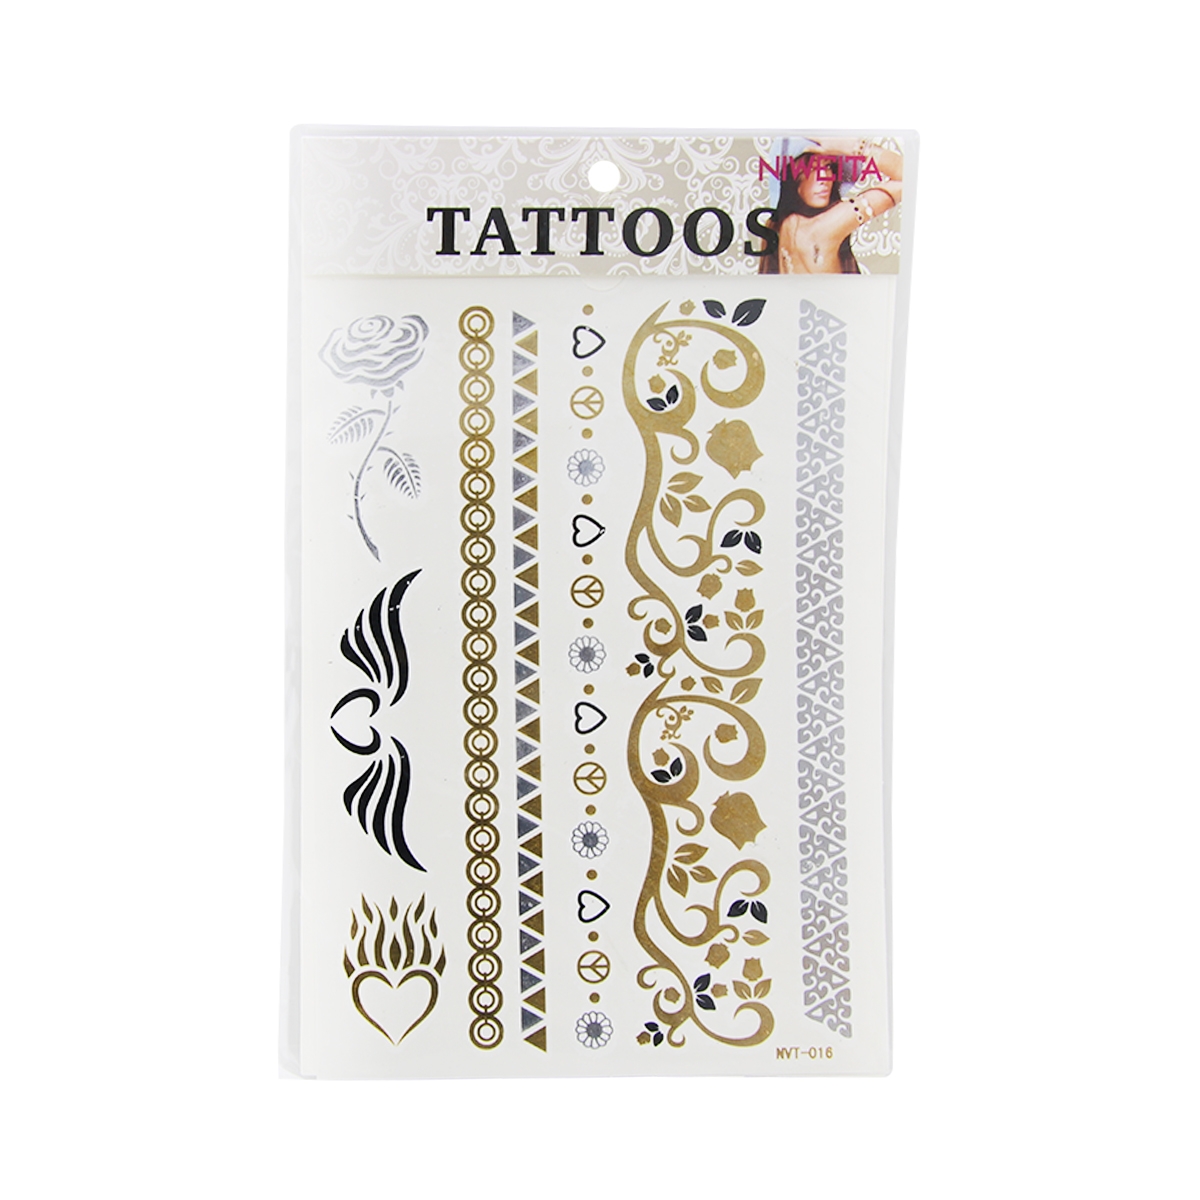 Ogc Tatuaj corp temporar metal tatto stickers nvt-016